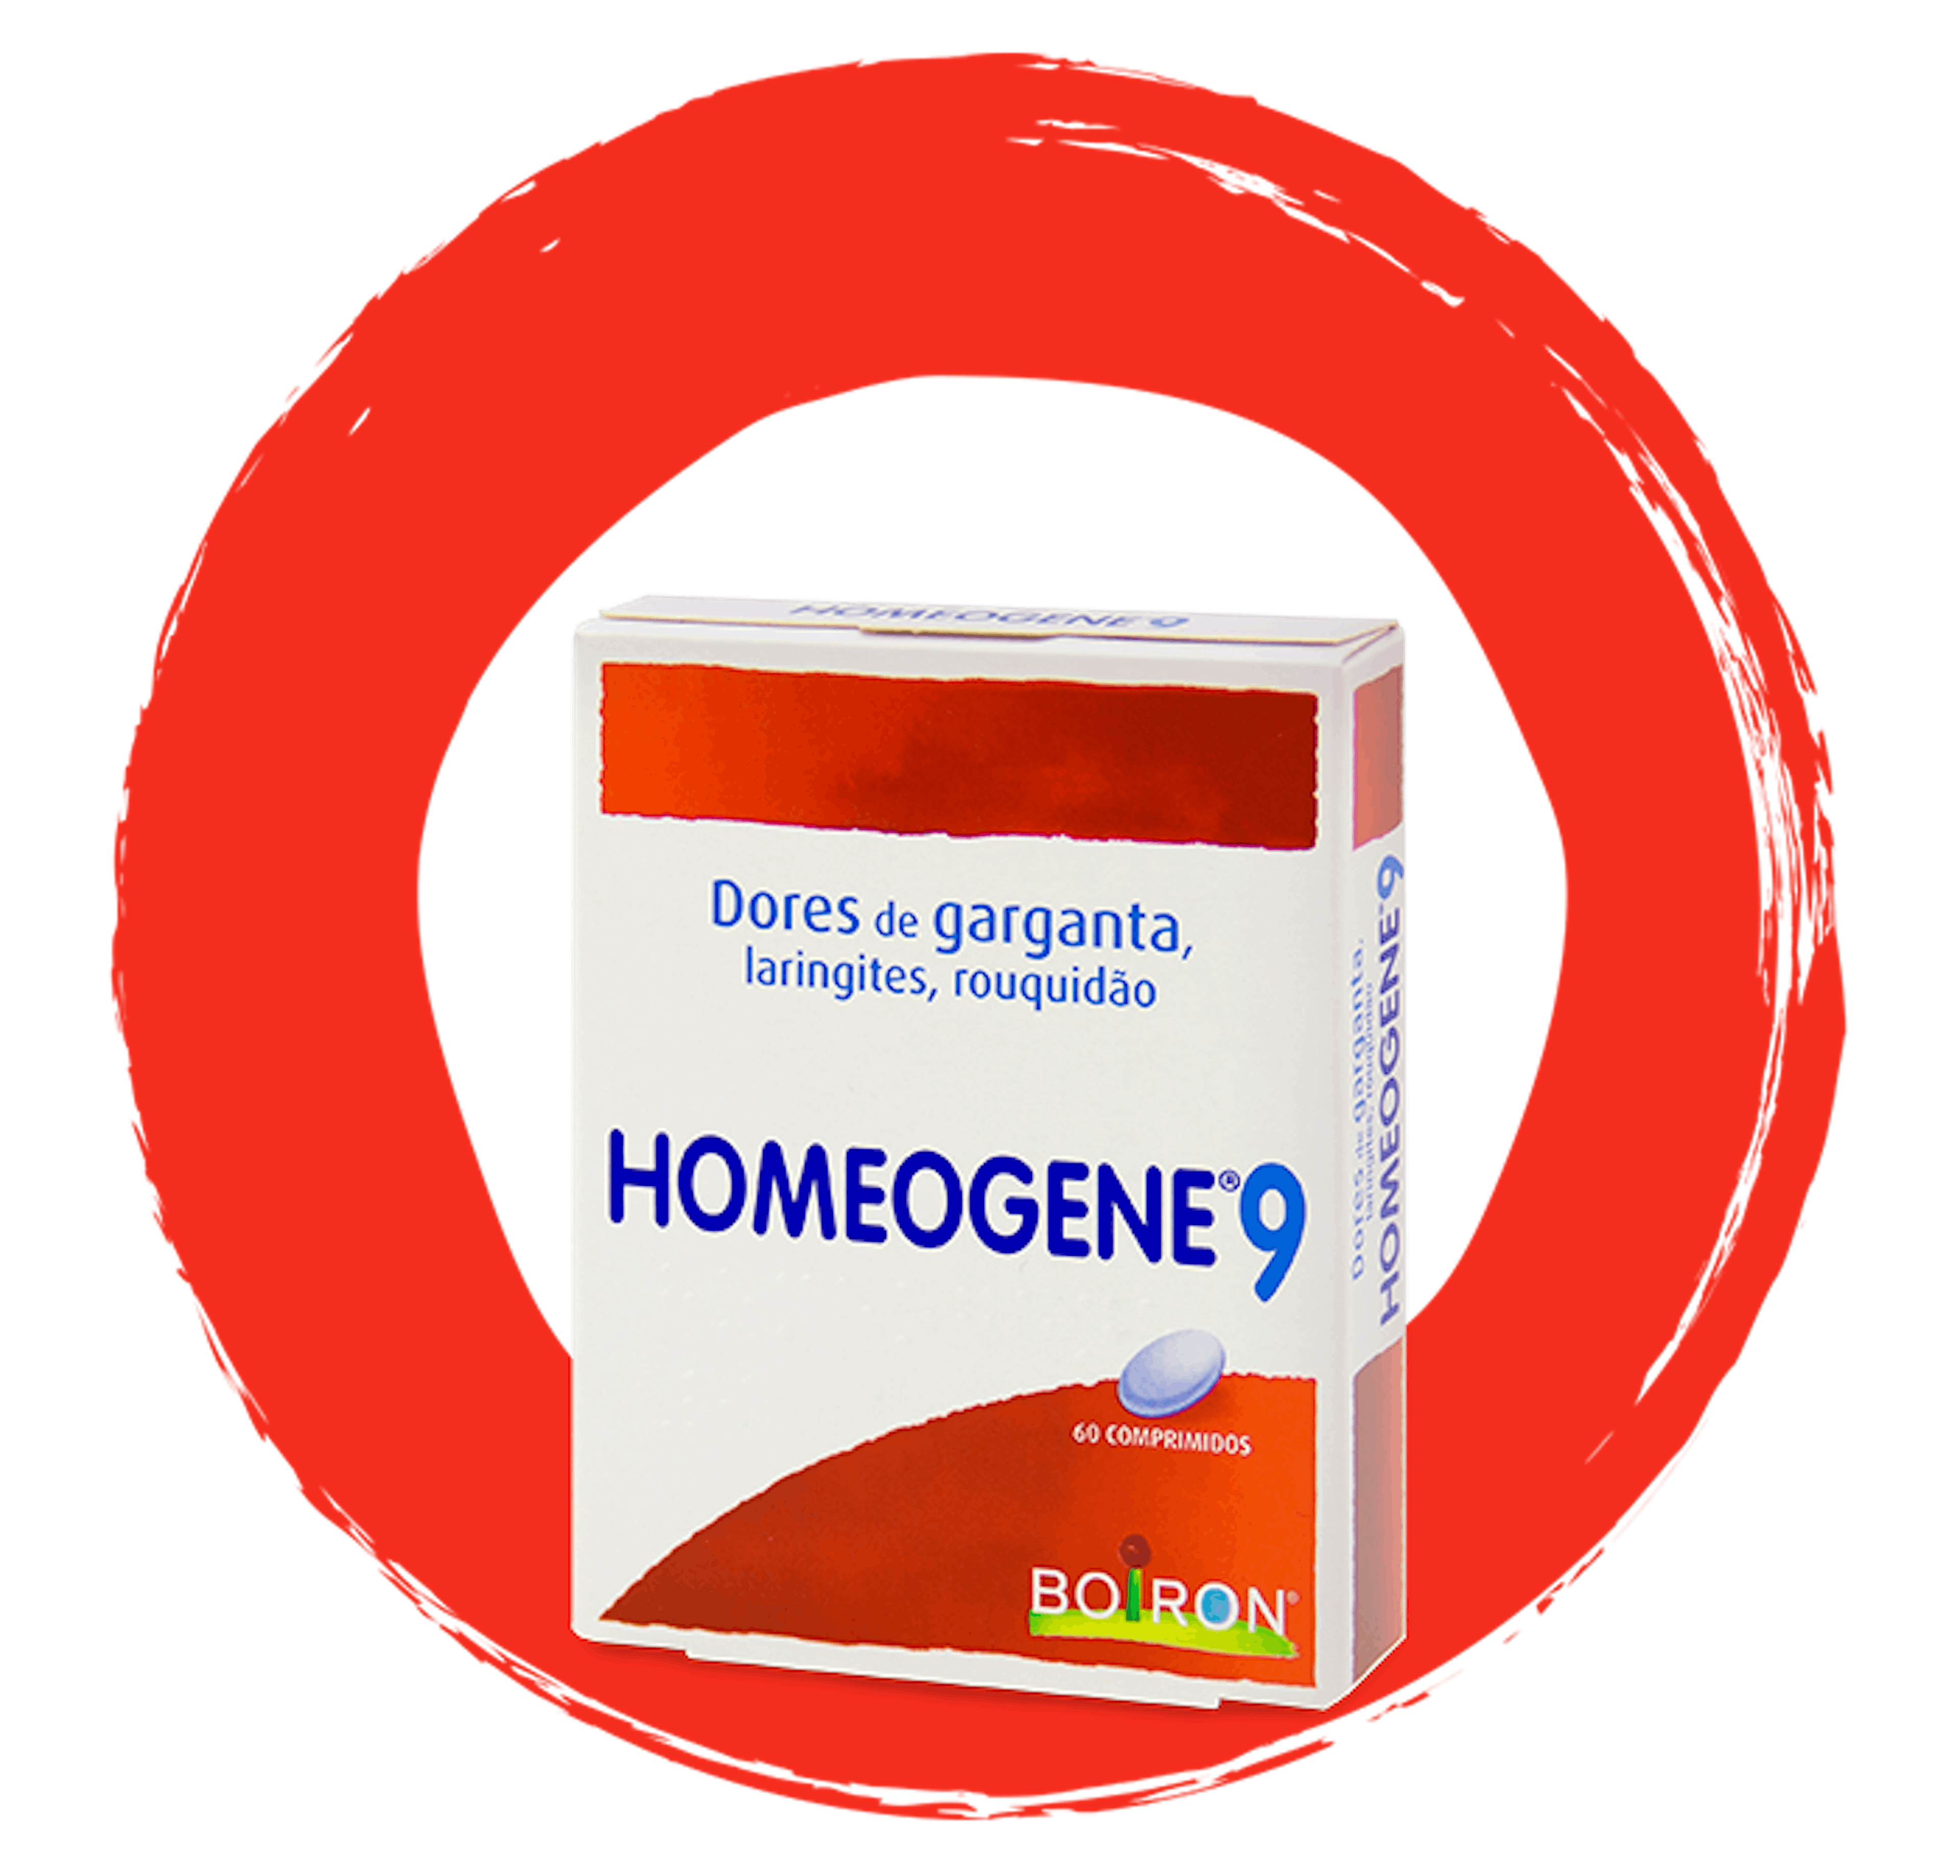 Homeogene - dores de garganta